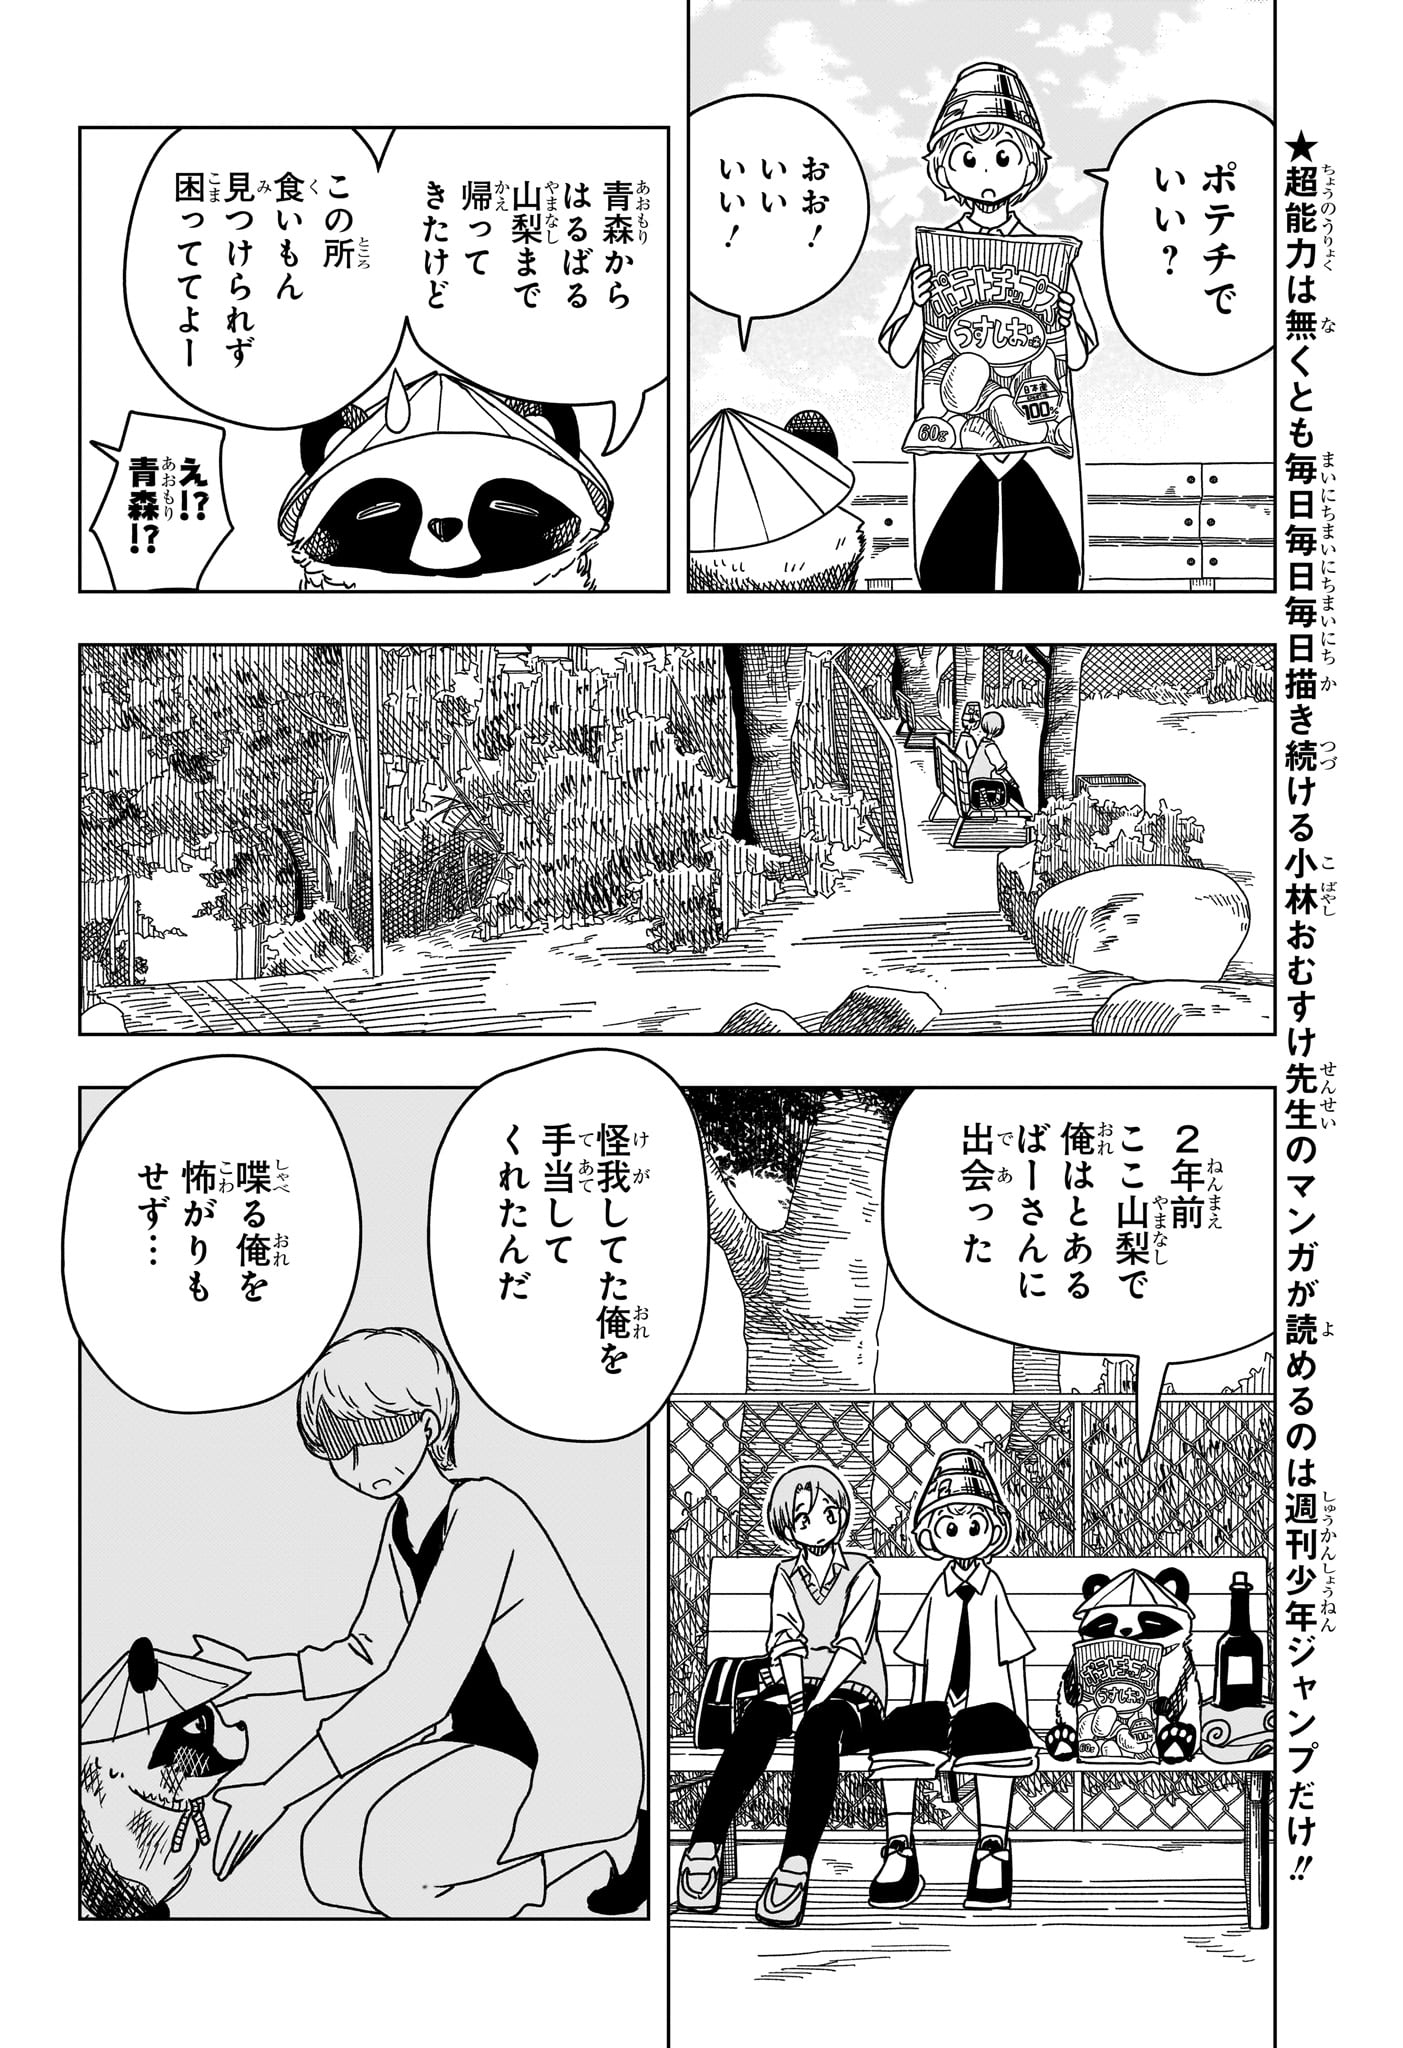 Saikuru Biyori - Chapter 9 - Page 4